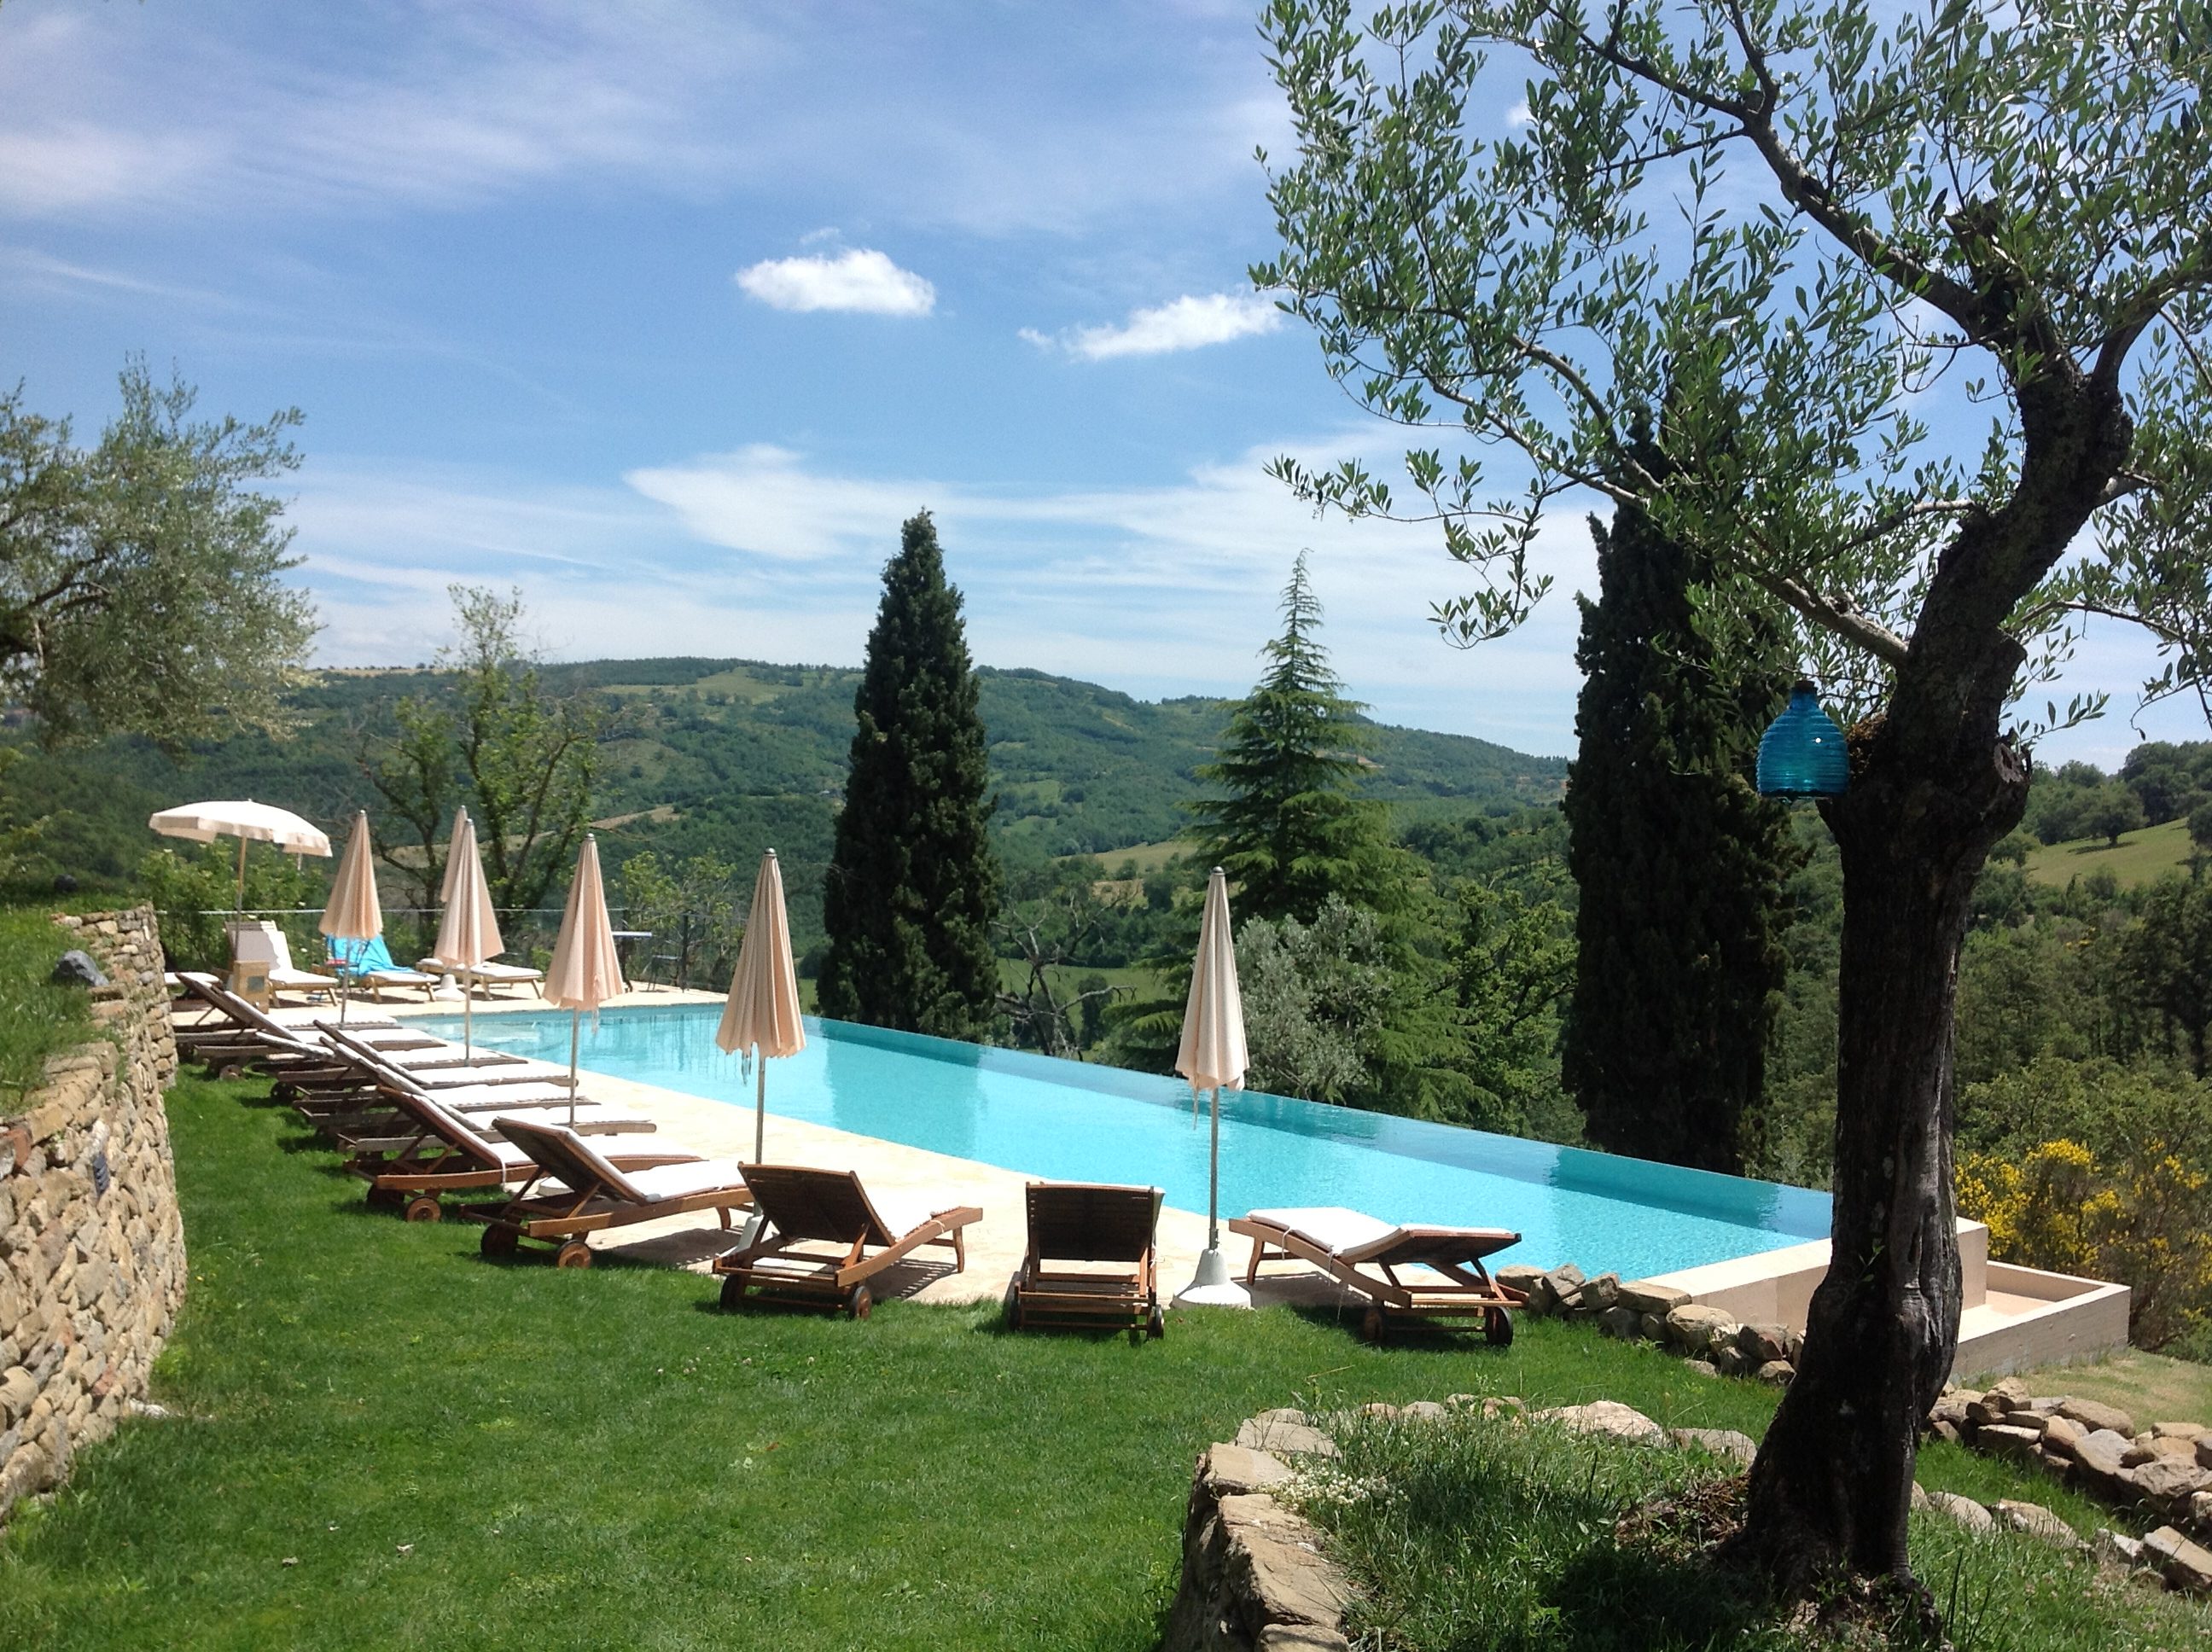 Borgo di Carpiano Pool